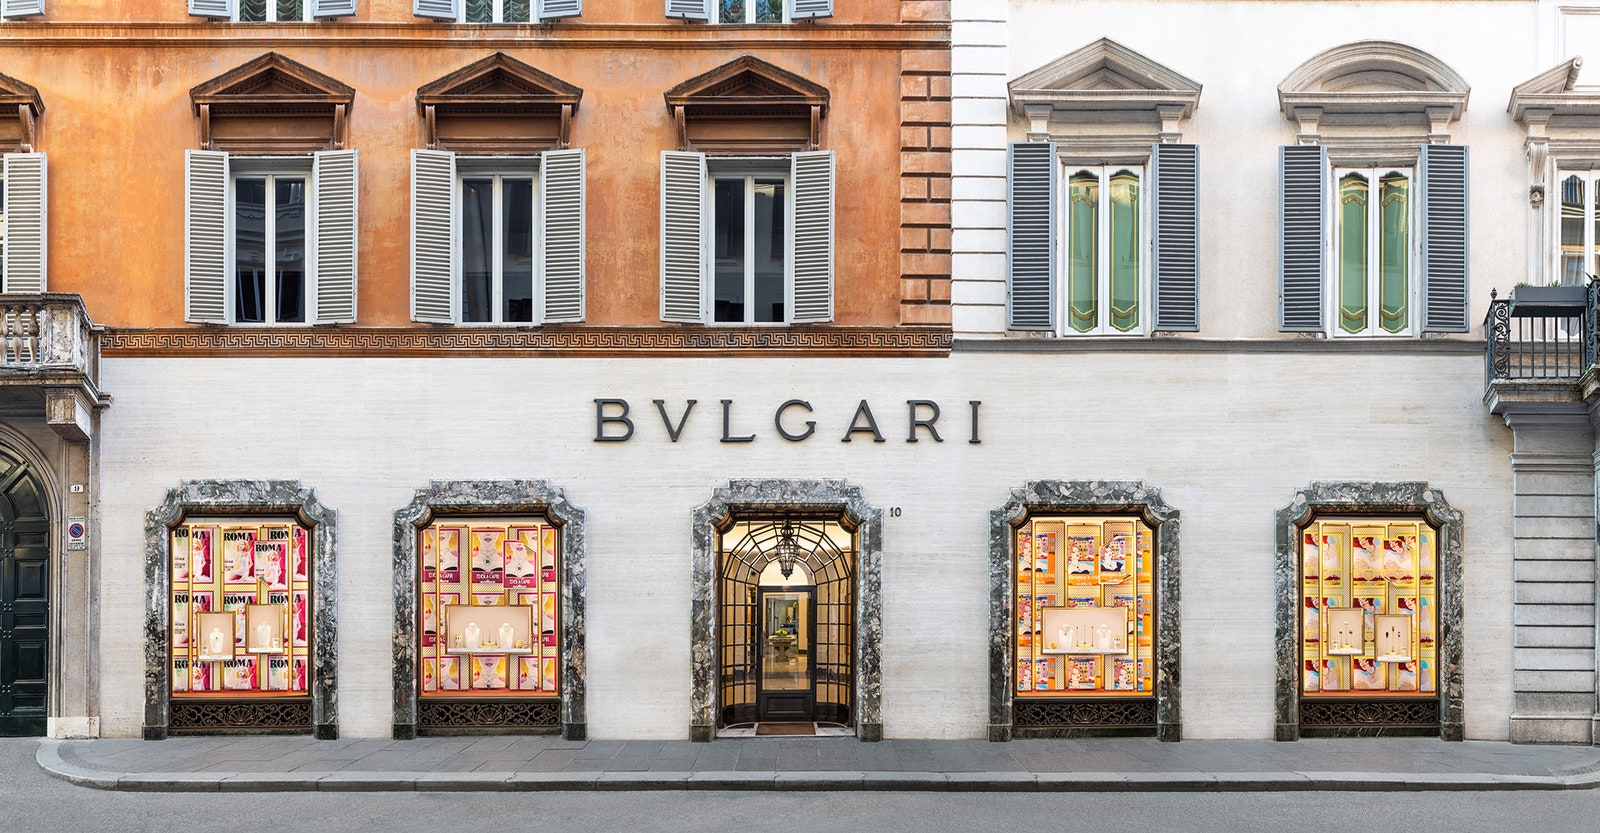 Дом Bvlgari украсил витрины в стиле итальянского кино 1950х годов